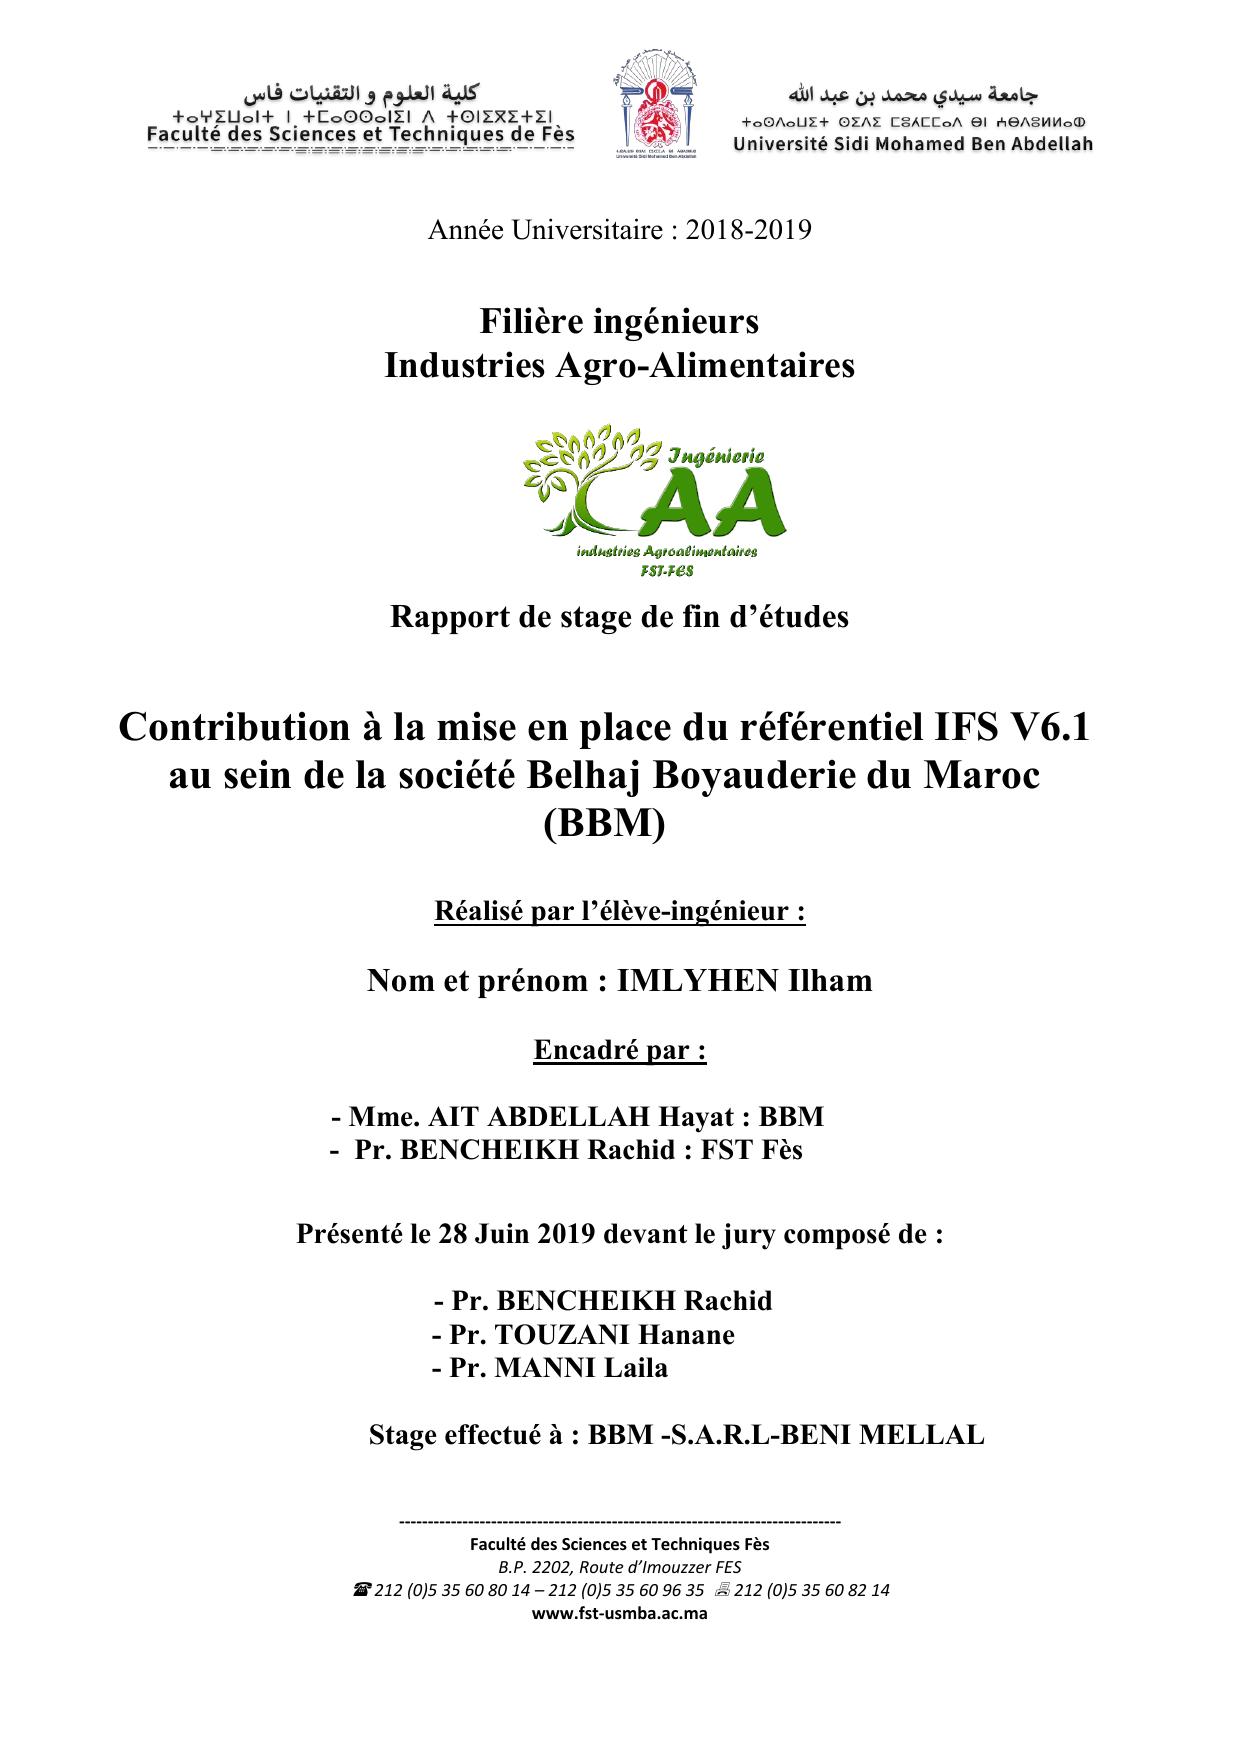 Contribution à la mise en place du référentiel IFS V6.1 au sein de la société Belhaj Boyauderie du Maroc (BBM)